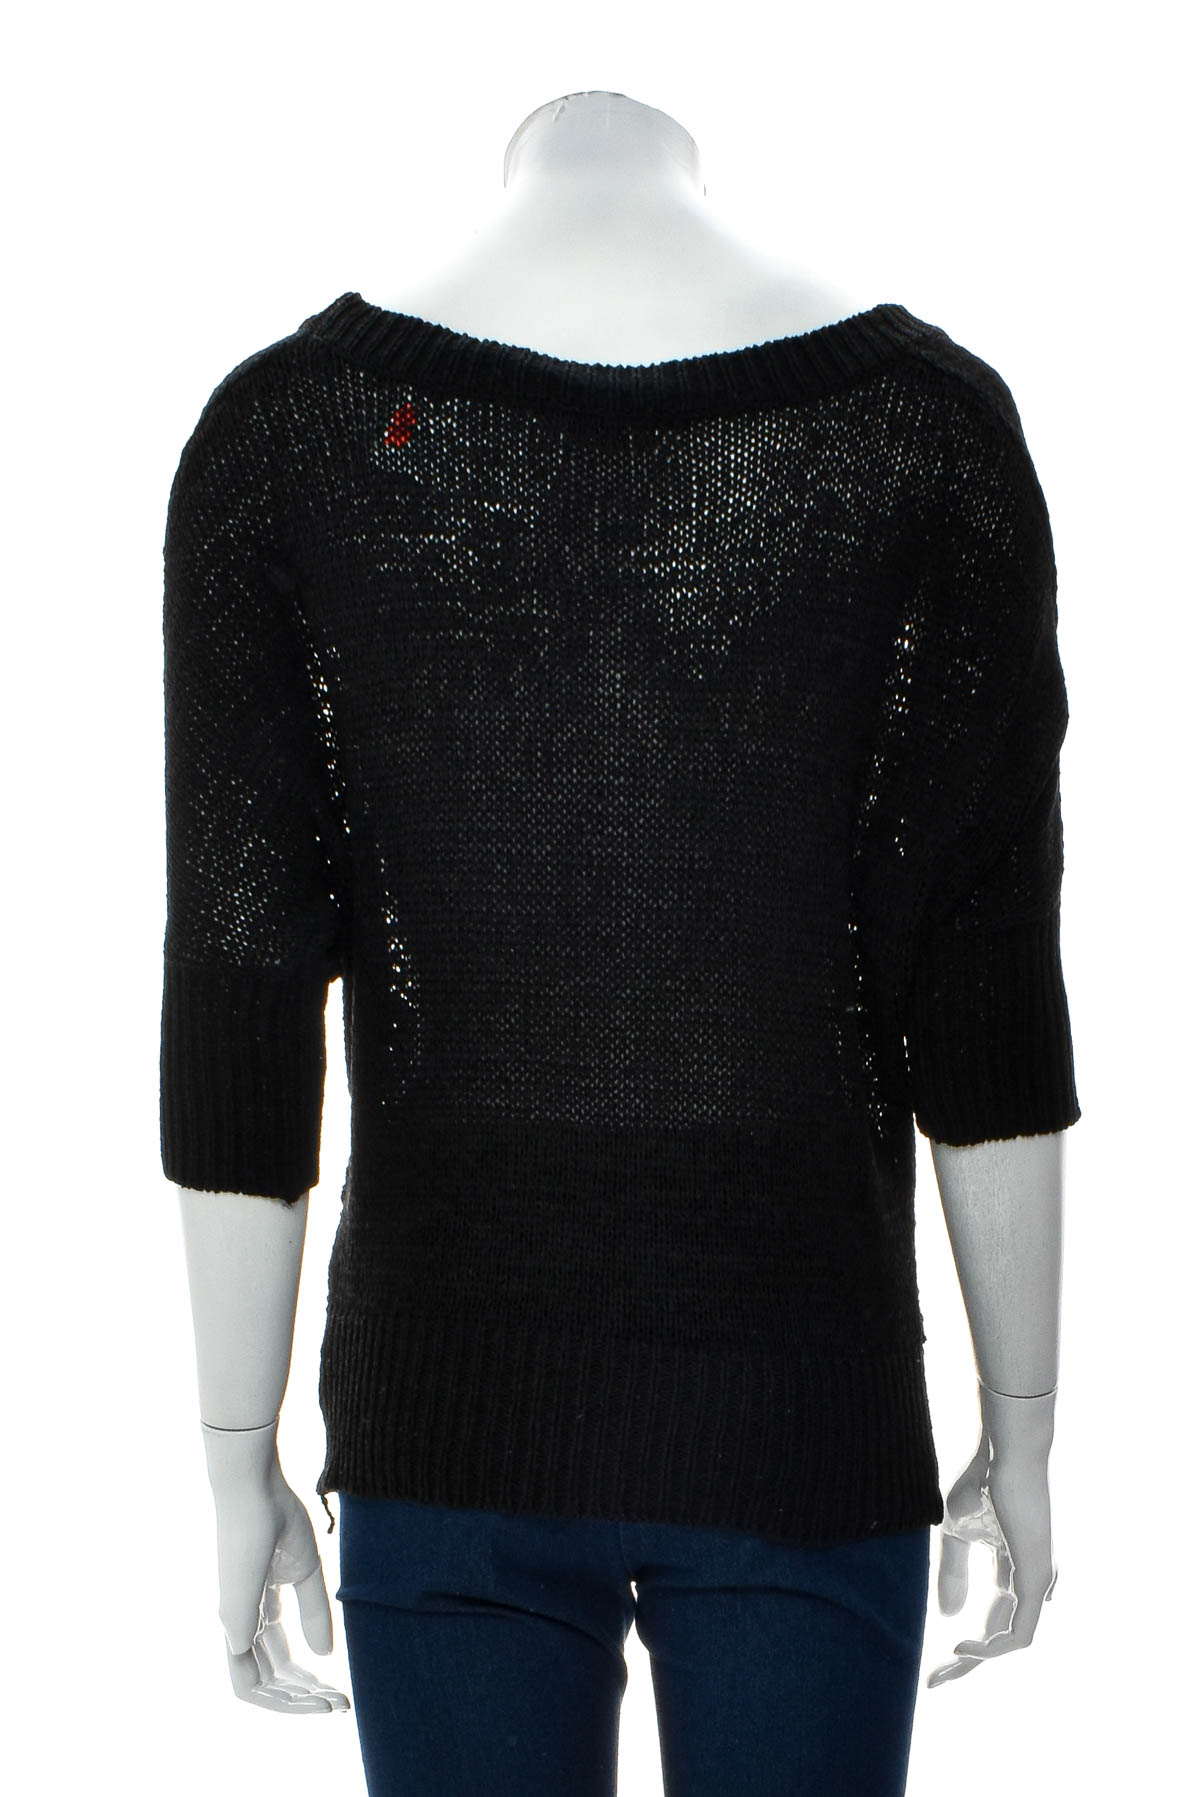 Women's sweater - TEMT - 1